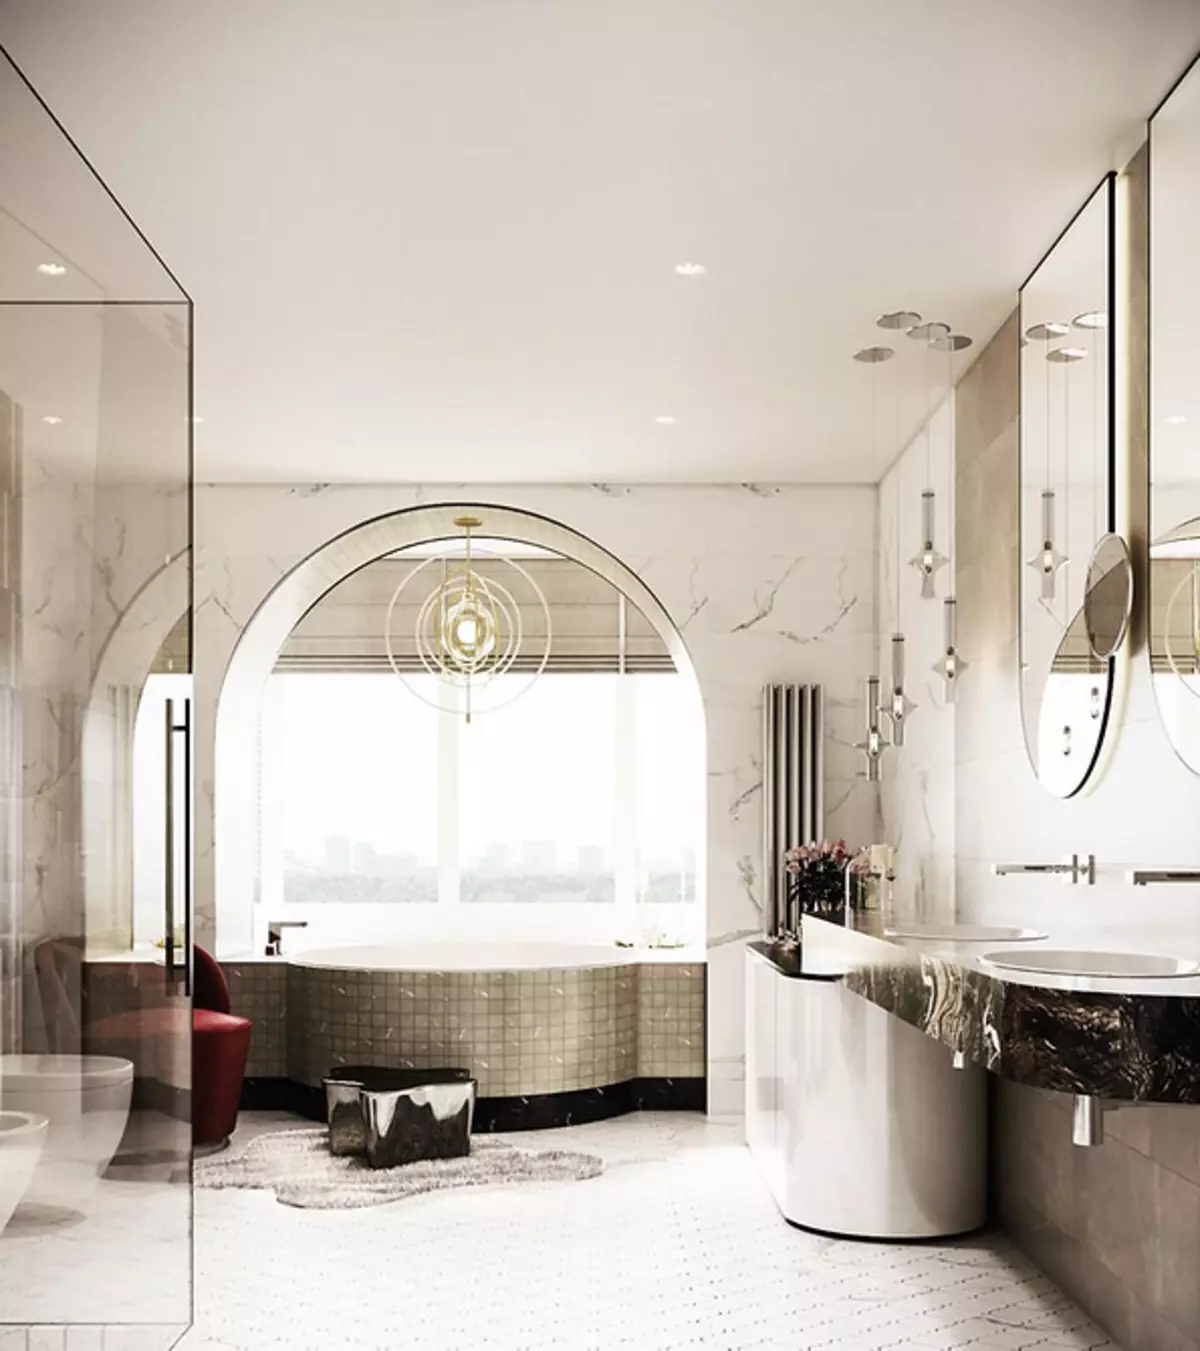 Design de salle de bain avec douche et baignoire: Idées intérieures sur 75 photos - IVD.RU 4108_59